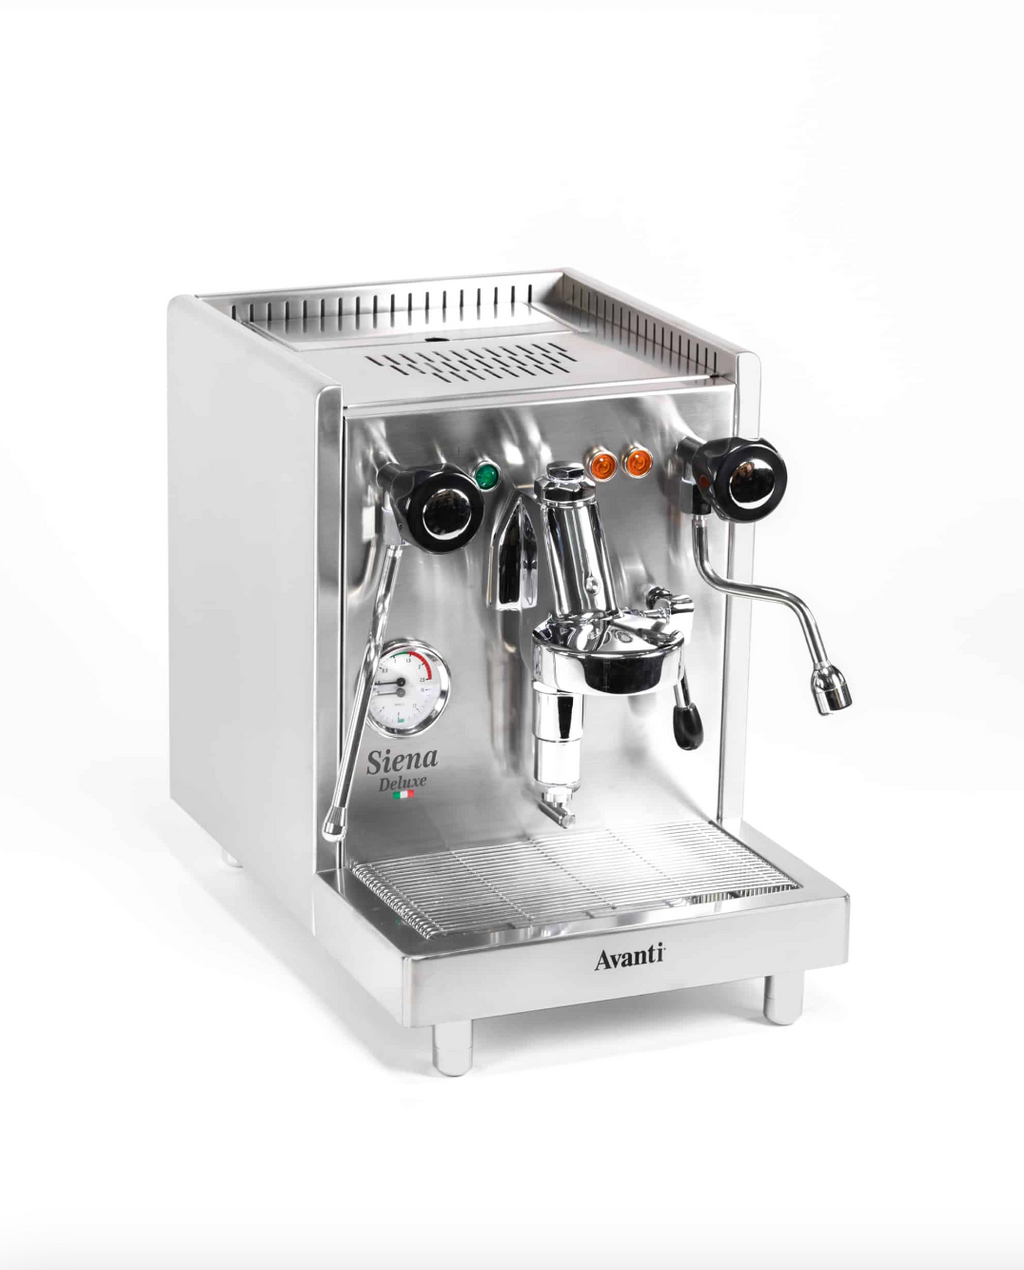 Machine espresso semi-automatique Avanti Siena Deluxe (semi-professionnelle)